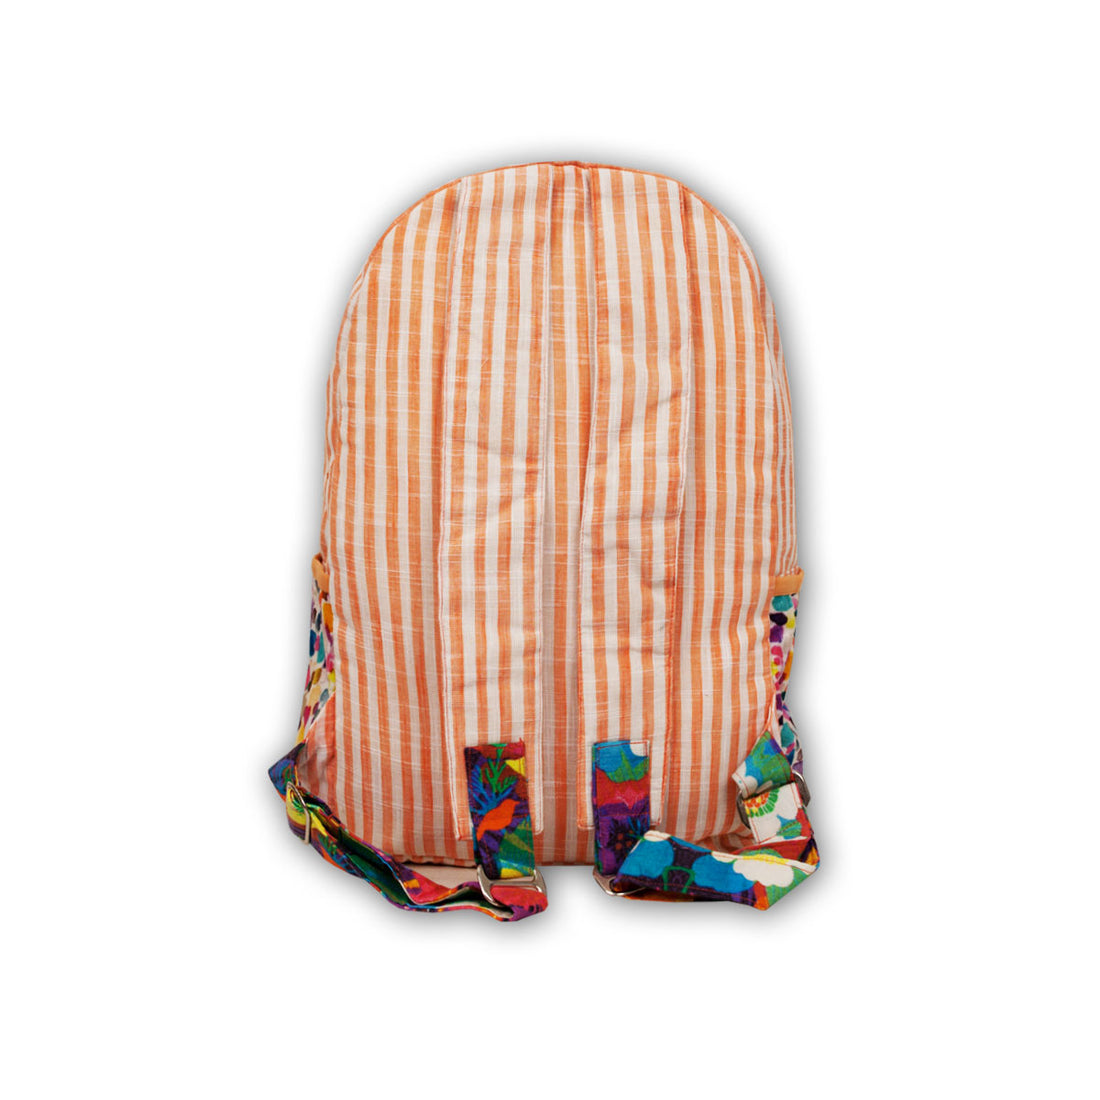 Printed Backpack- Peach Stripes